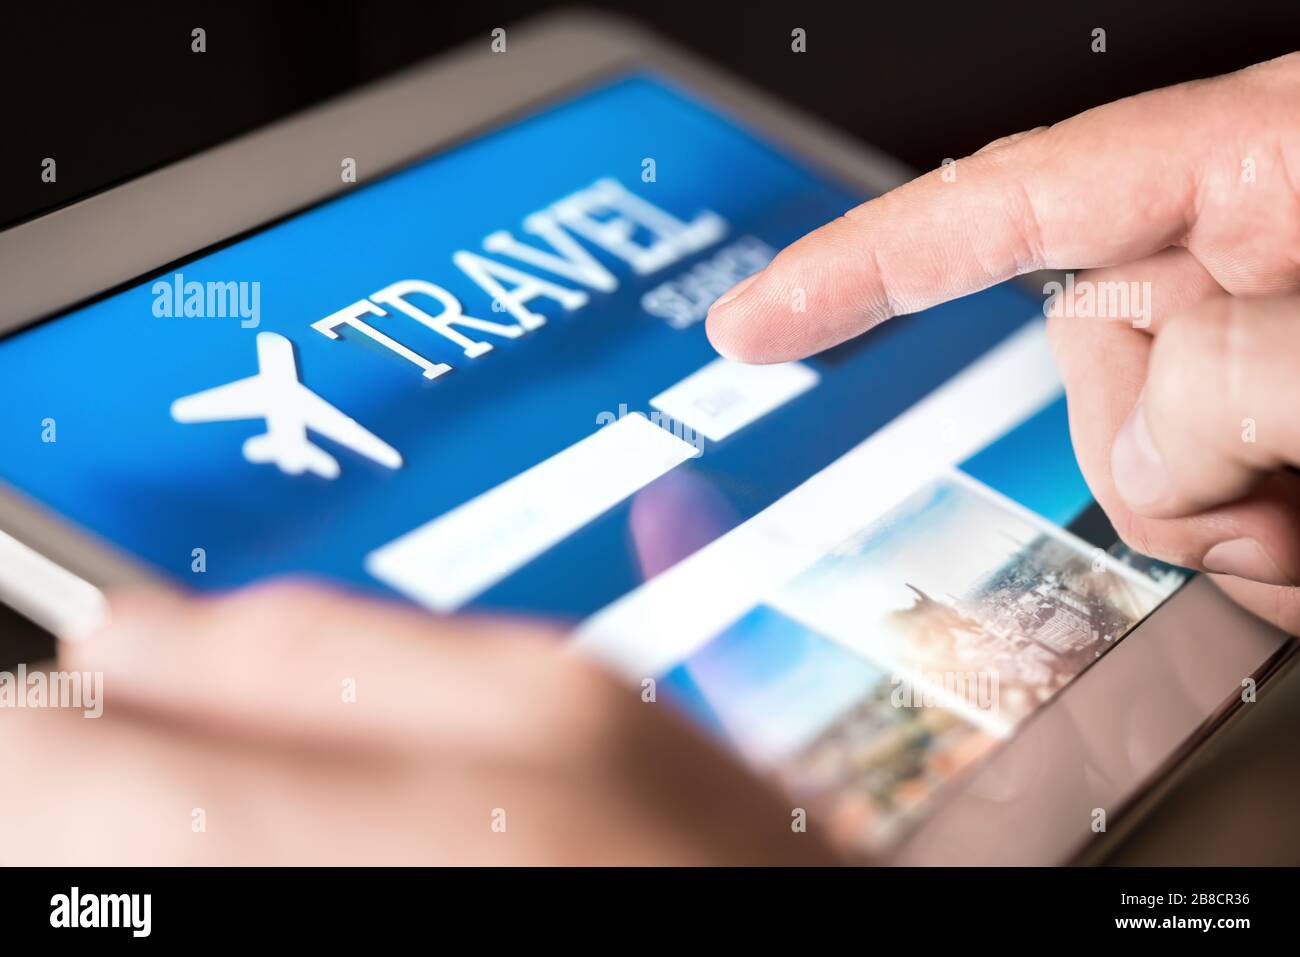 Motore di ricerca di viaggi e sito web per le vacanze. Uomo che usa il tablet per cercare voli e hotel a basso costo. Prenotazione online di biglietti per le vacanze. Foto Stock